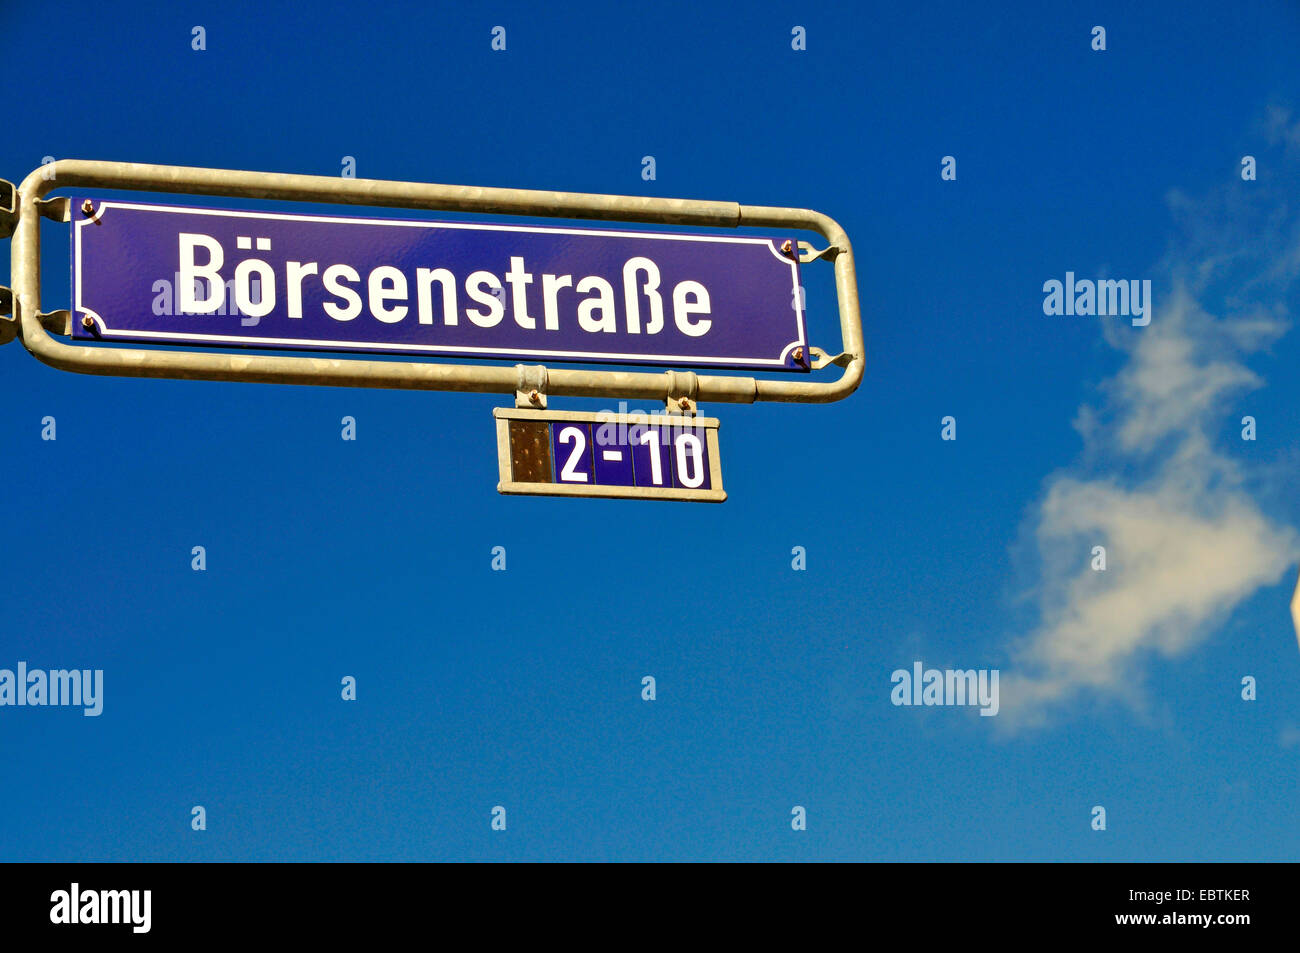 Targhetta del nome Boersenstrasse 2-10, street di borsa, nel quartiere finanziario di Francoforte sul Meno, Germania, Hesse, Francoforte sul Meno Foto Stock